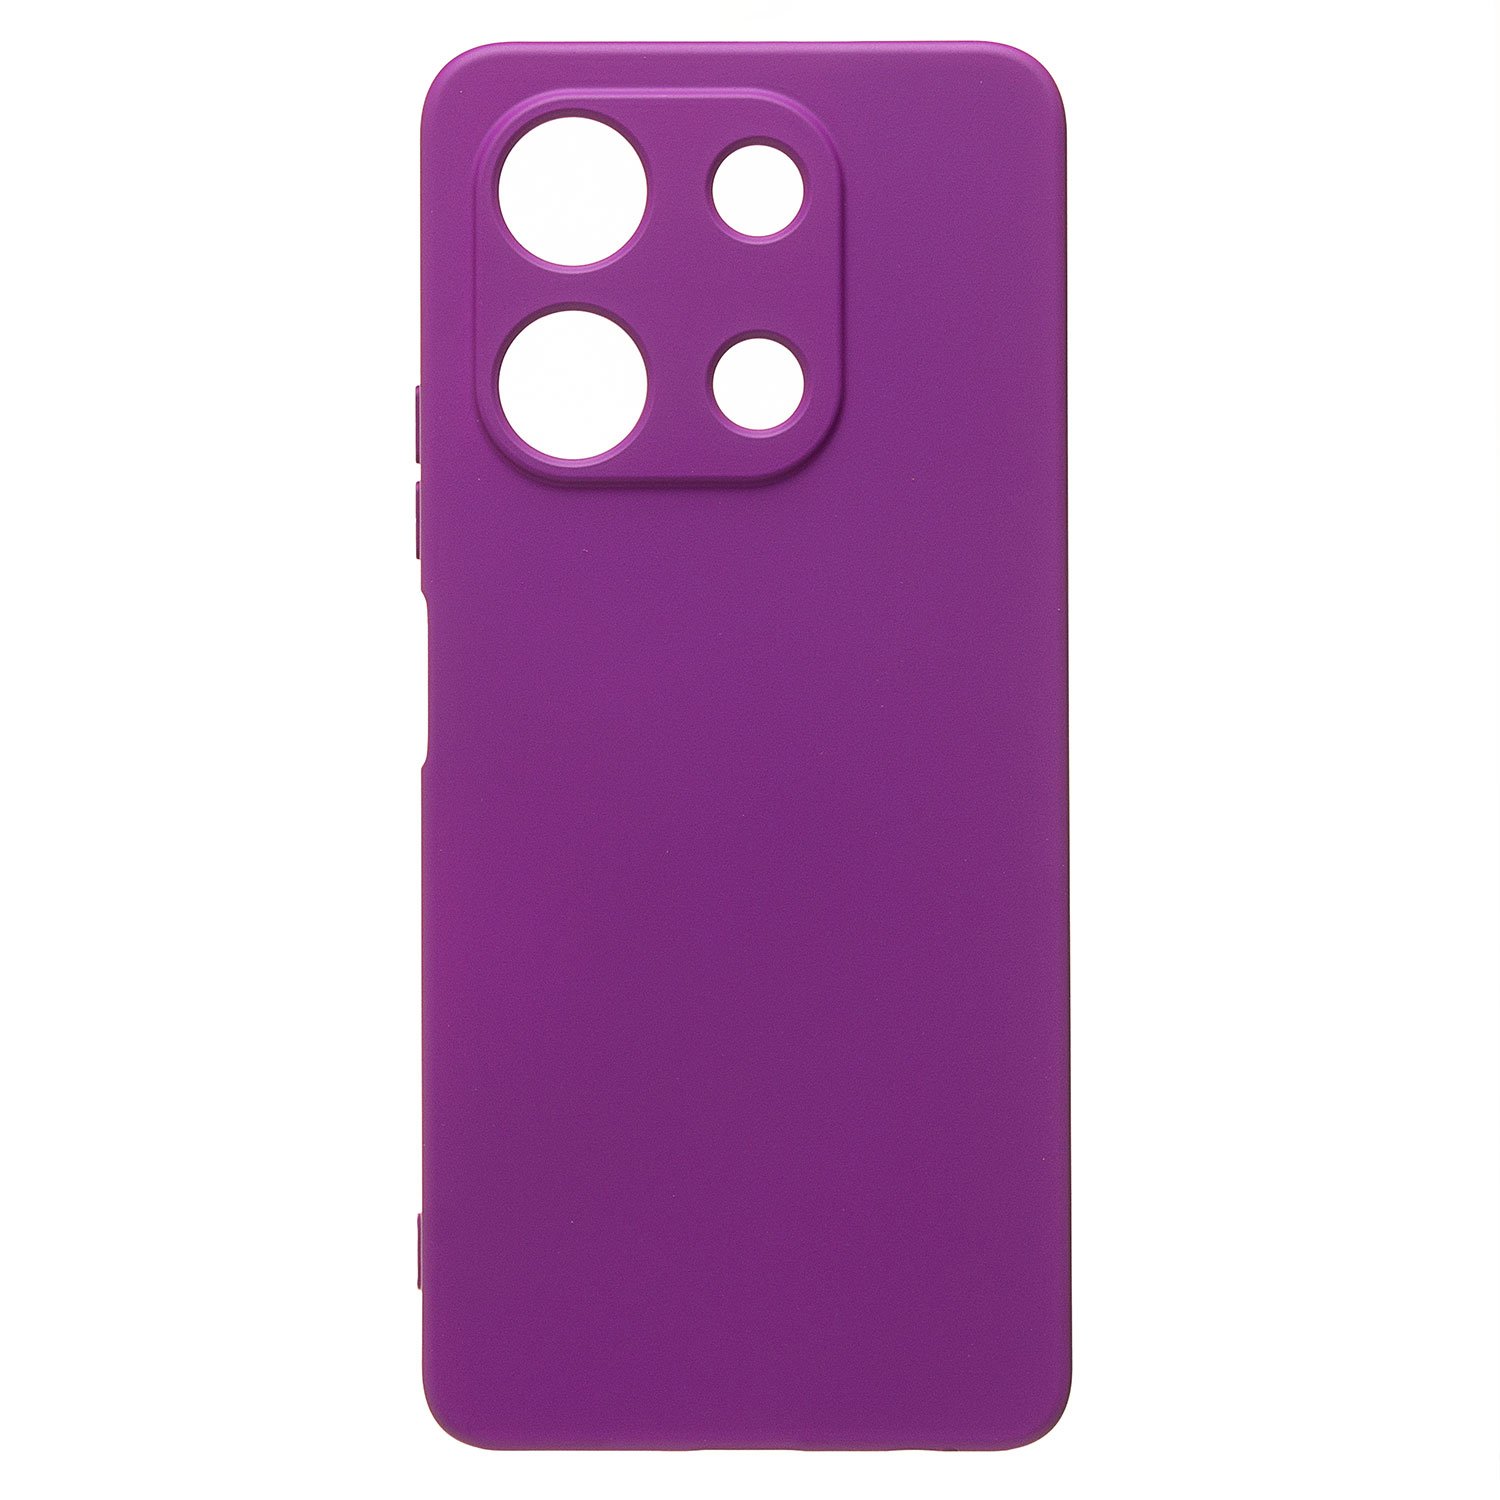 Чехол-накладка Activ Full Original Design для смартфона Infinix Note 30 4G, силикон, фиолетовый (219854)